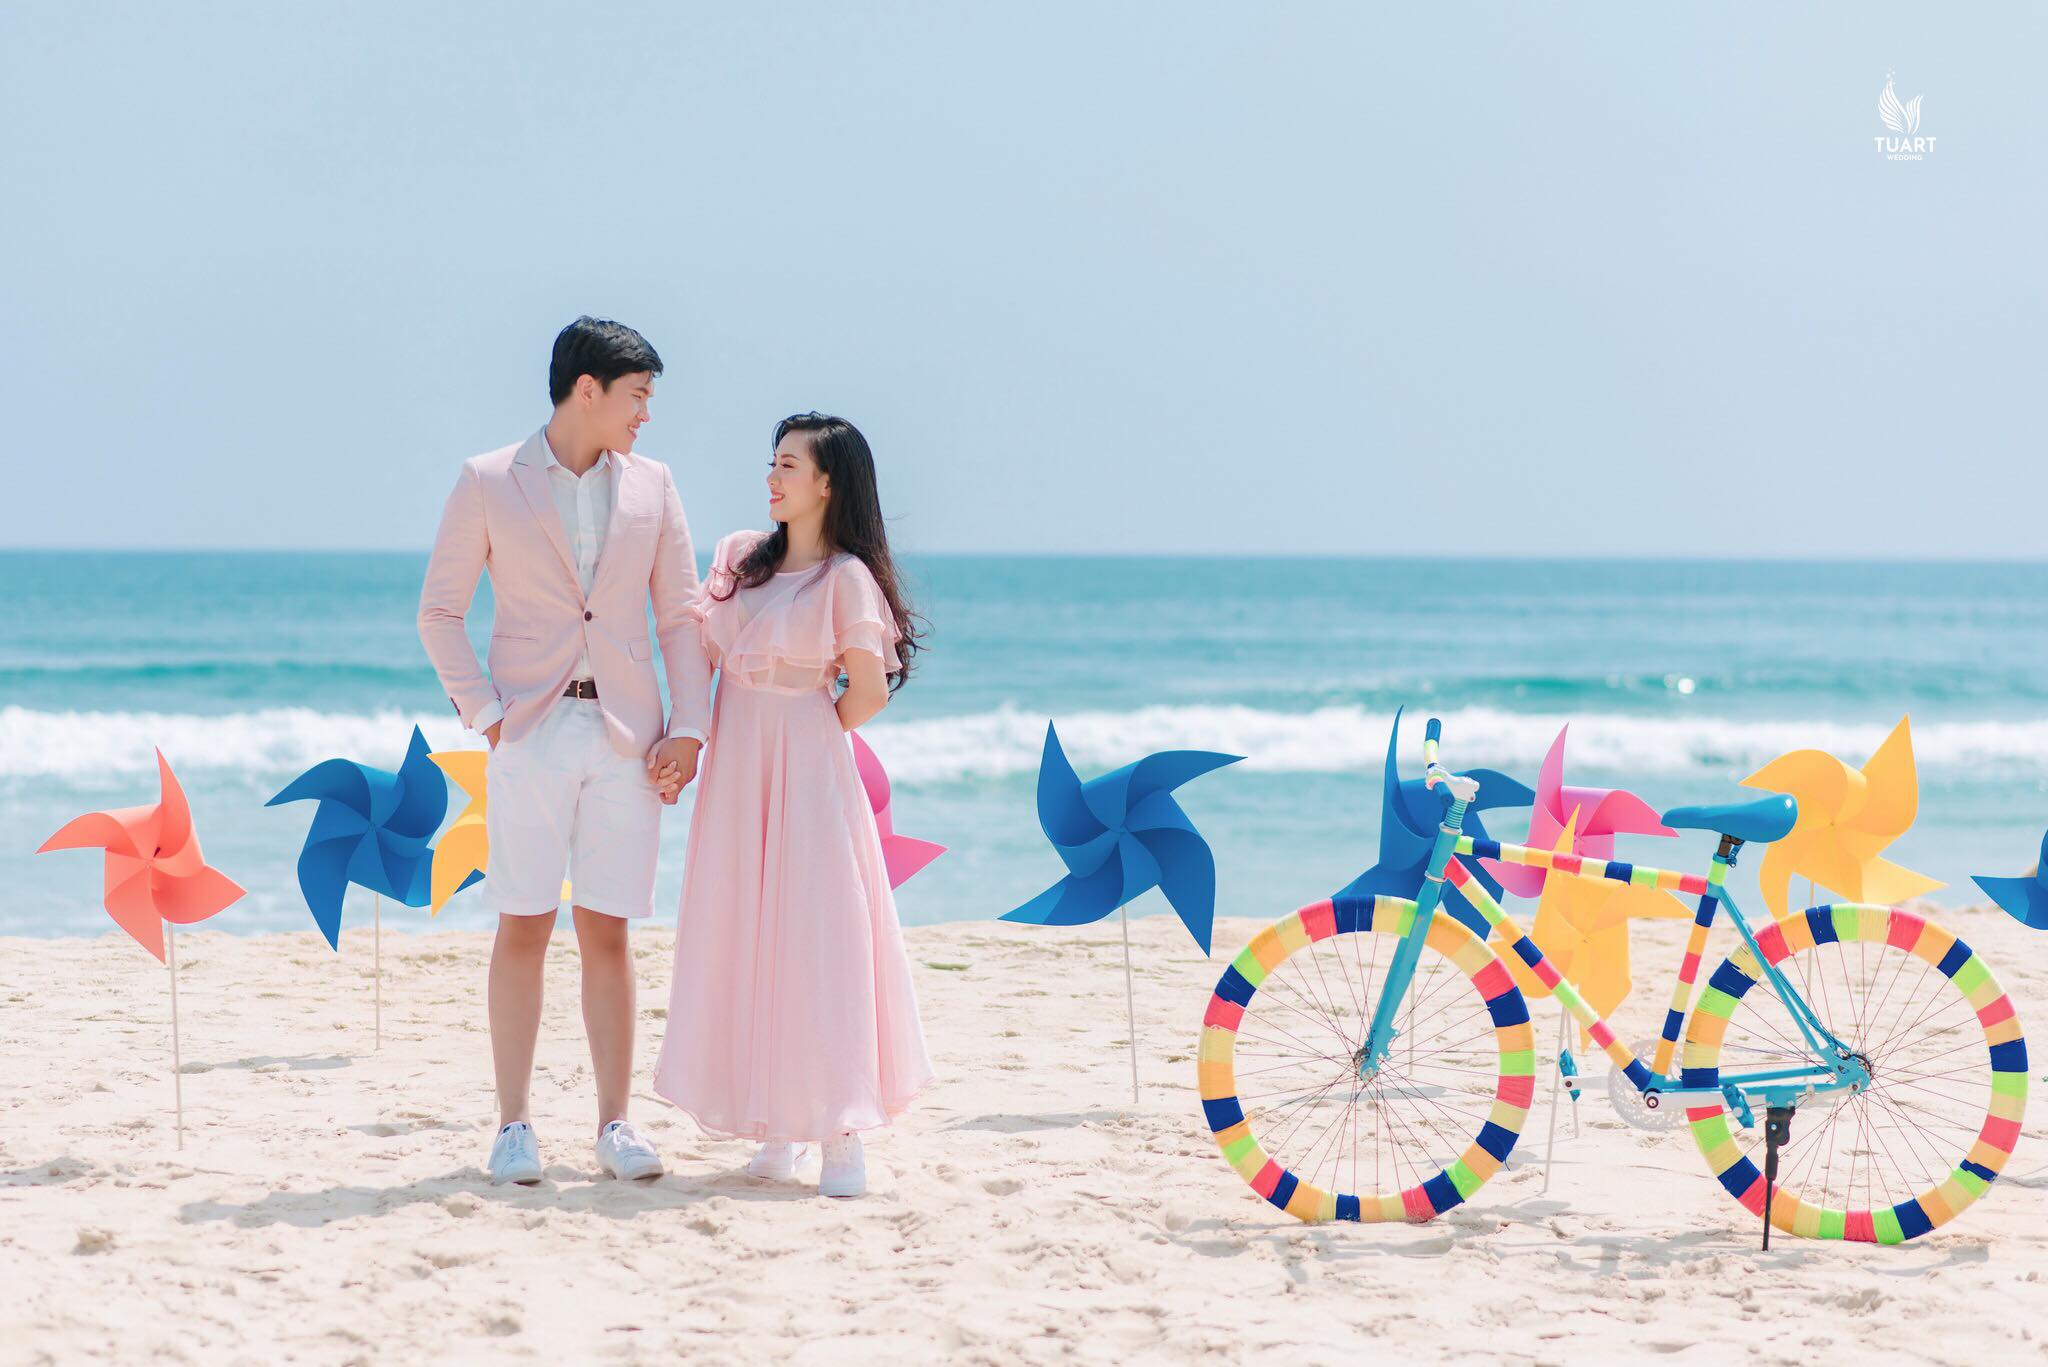 Album chụp ảnh cưới Mỹ Khê-Chong chóng quay khi trời xanh có nắng 13